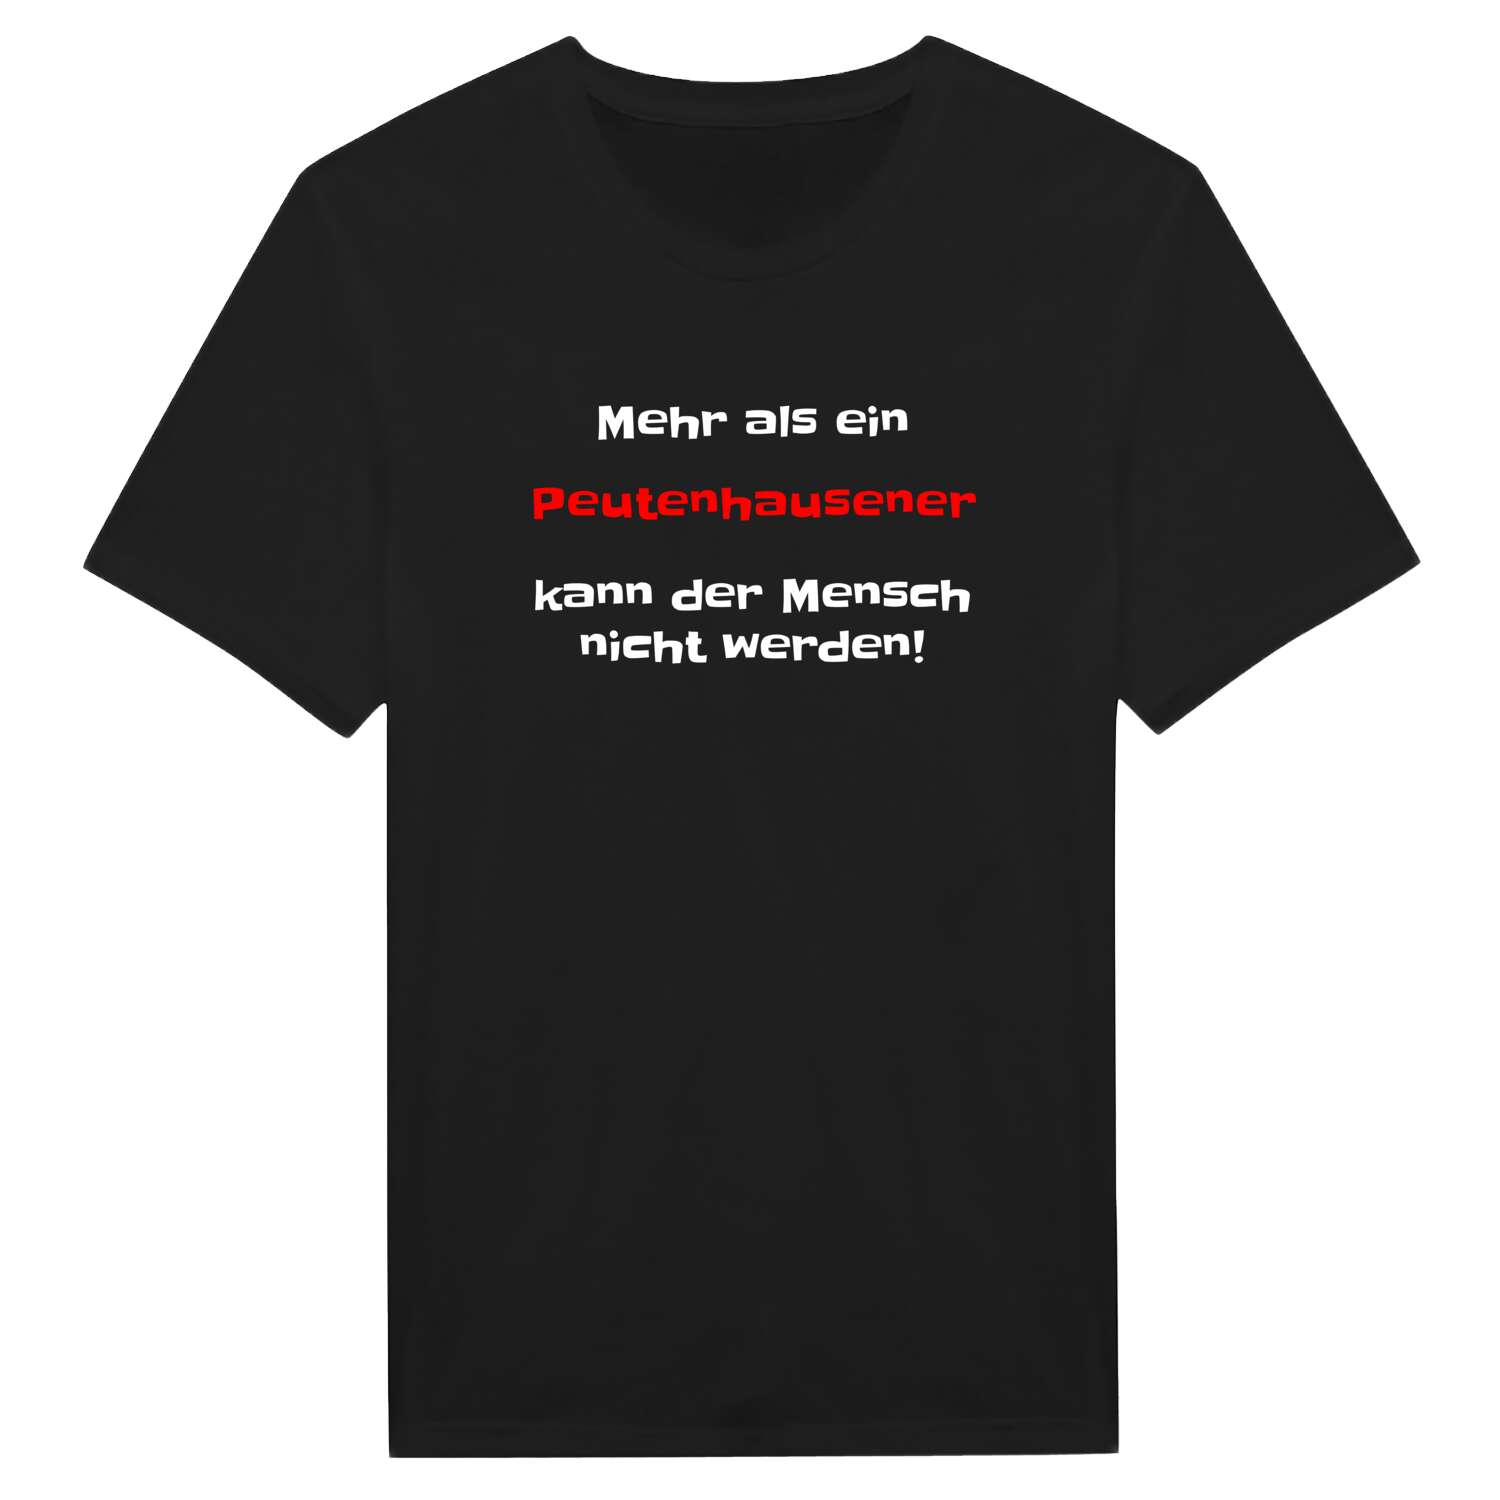 Peutenhausen T-Shirt »Mehr als ein«